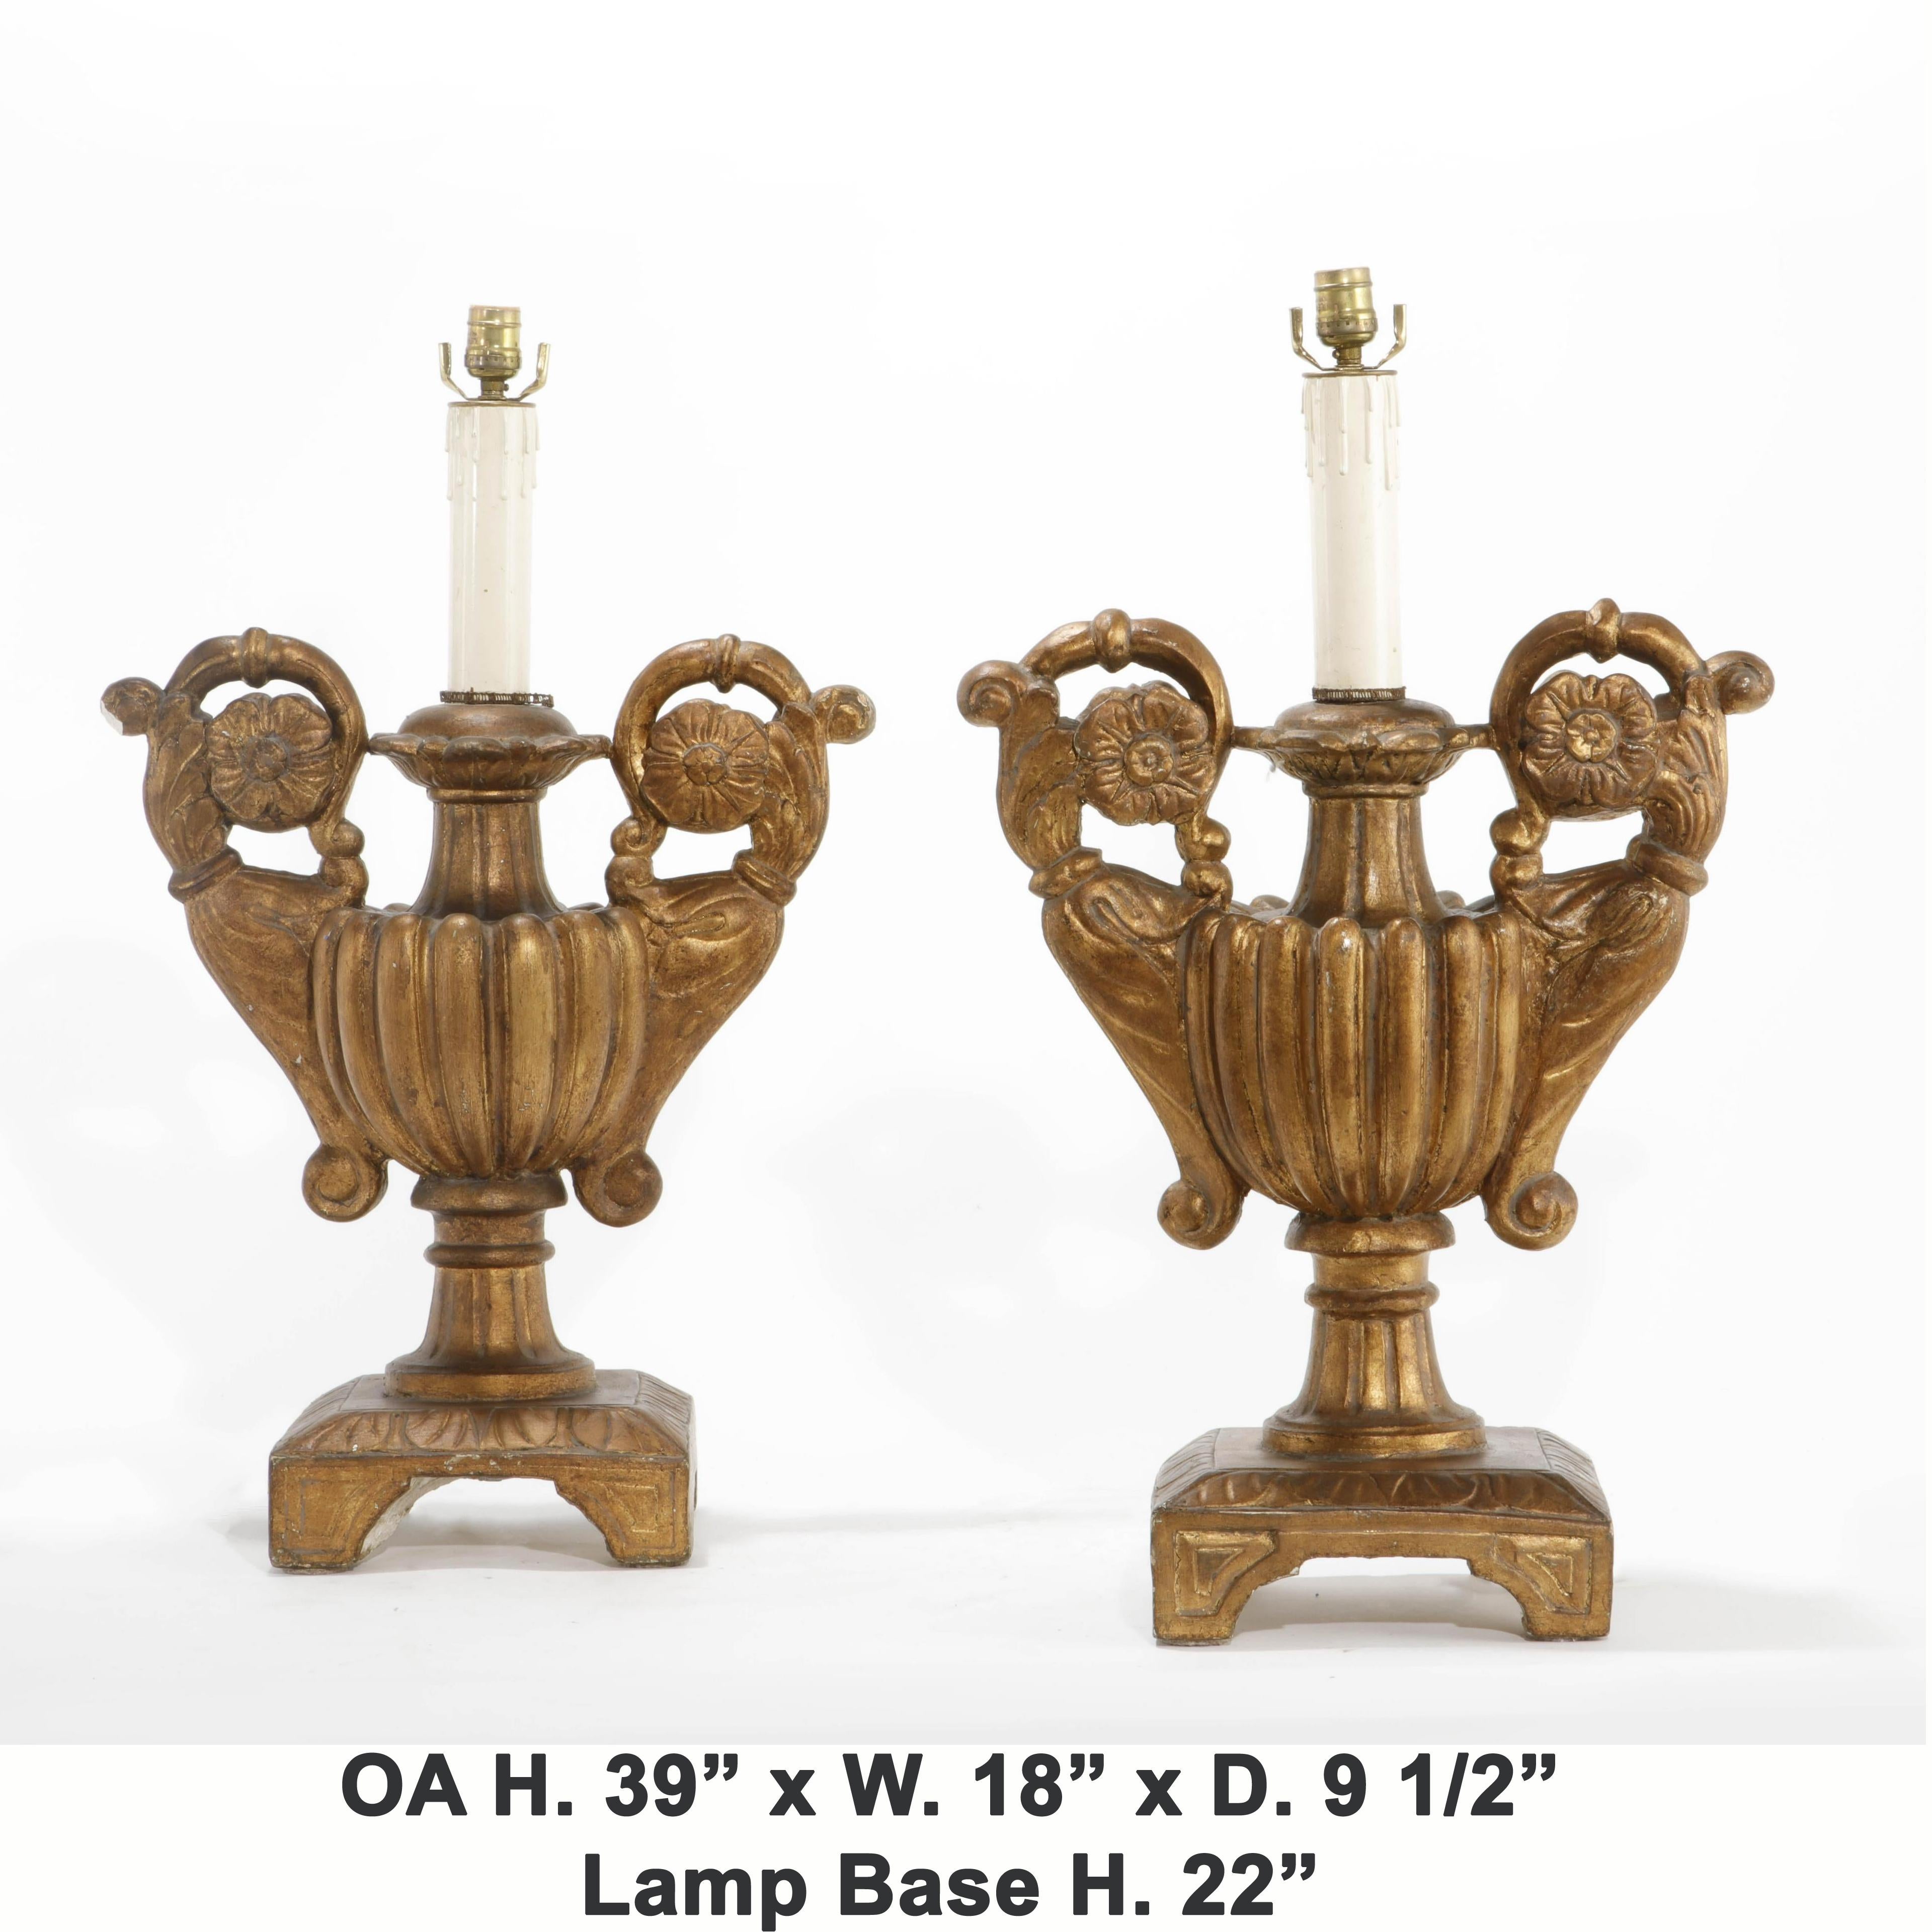 Attrayante paire de lampes à urne en bois doré sculpté de style baroque italien, 
milieu du 20e siècle.

Magnifiquement dorées, les urnes de style baroque montées en lampes, avec un corps sculpté de godrons, flanqué de bras inspirés de